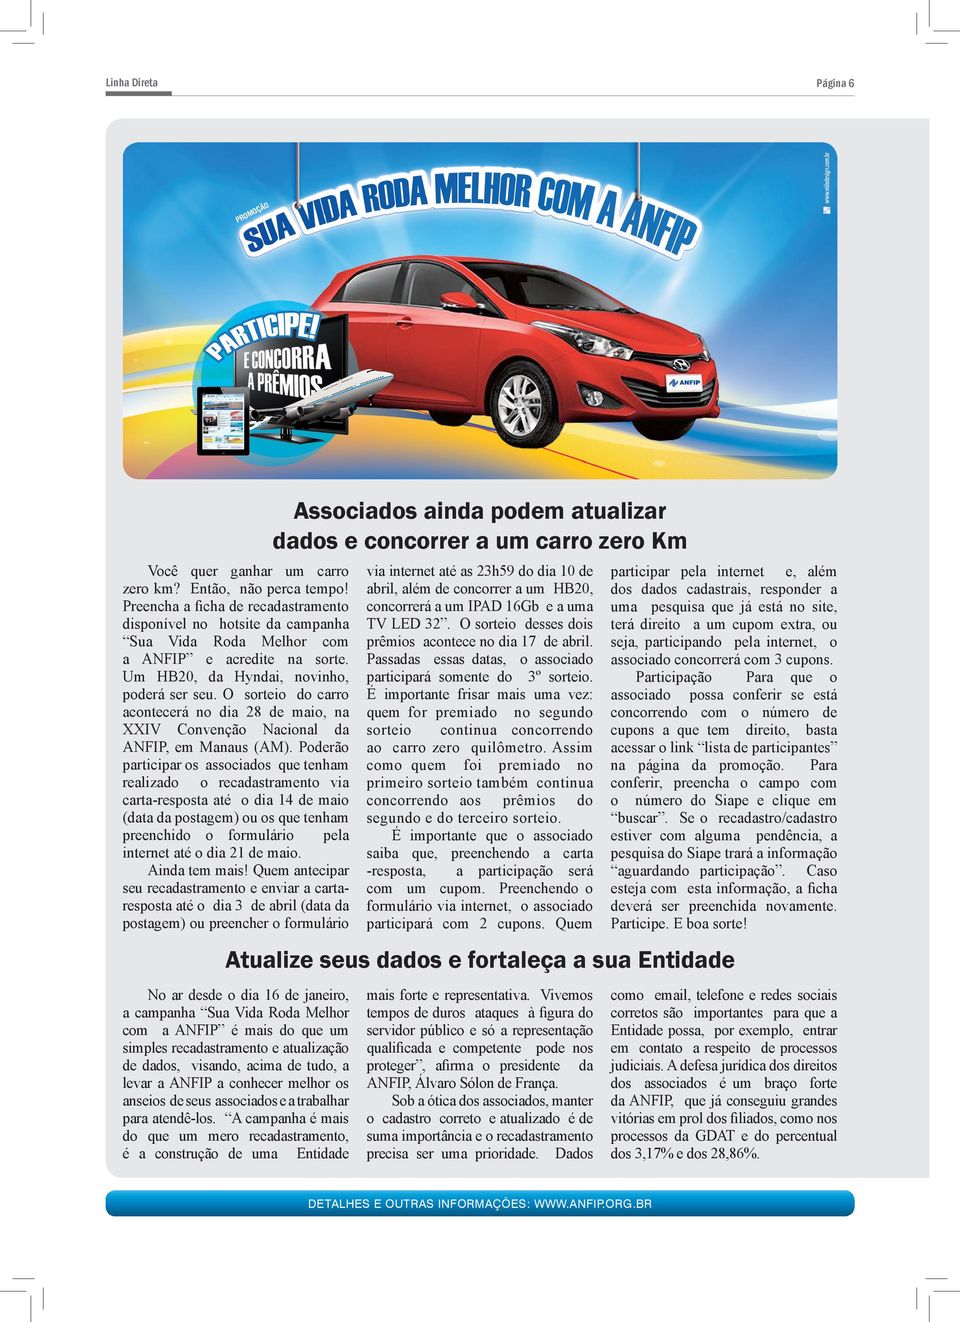 O sorteio do carro acontecerá no dia 28 de maio, na XXIV Convenção Nacional da ANFIP, em Manaus (AM).